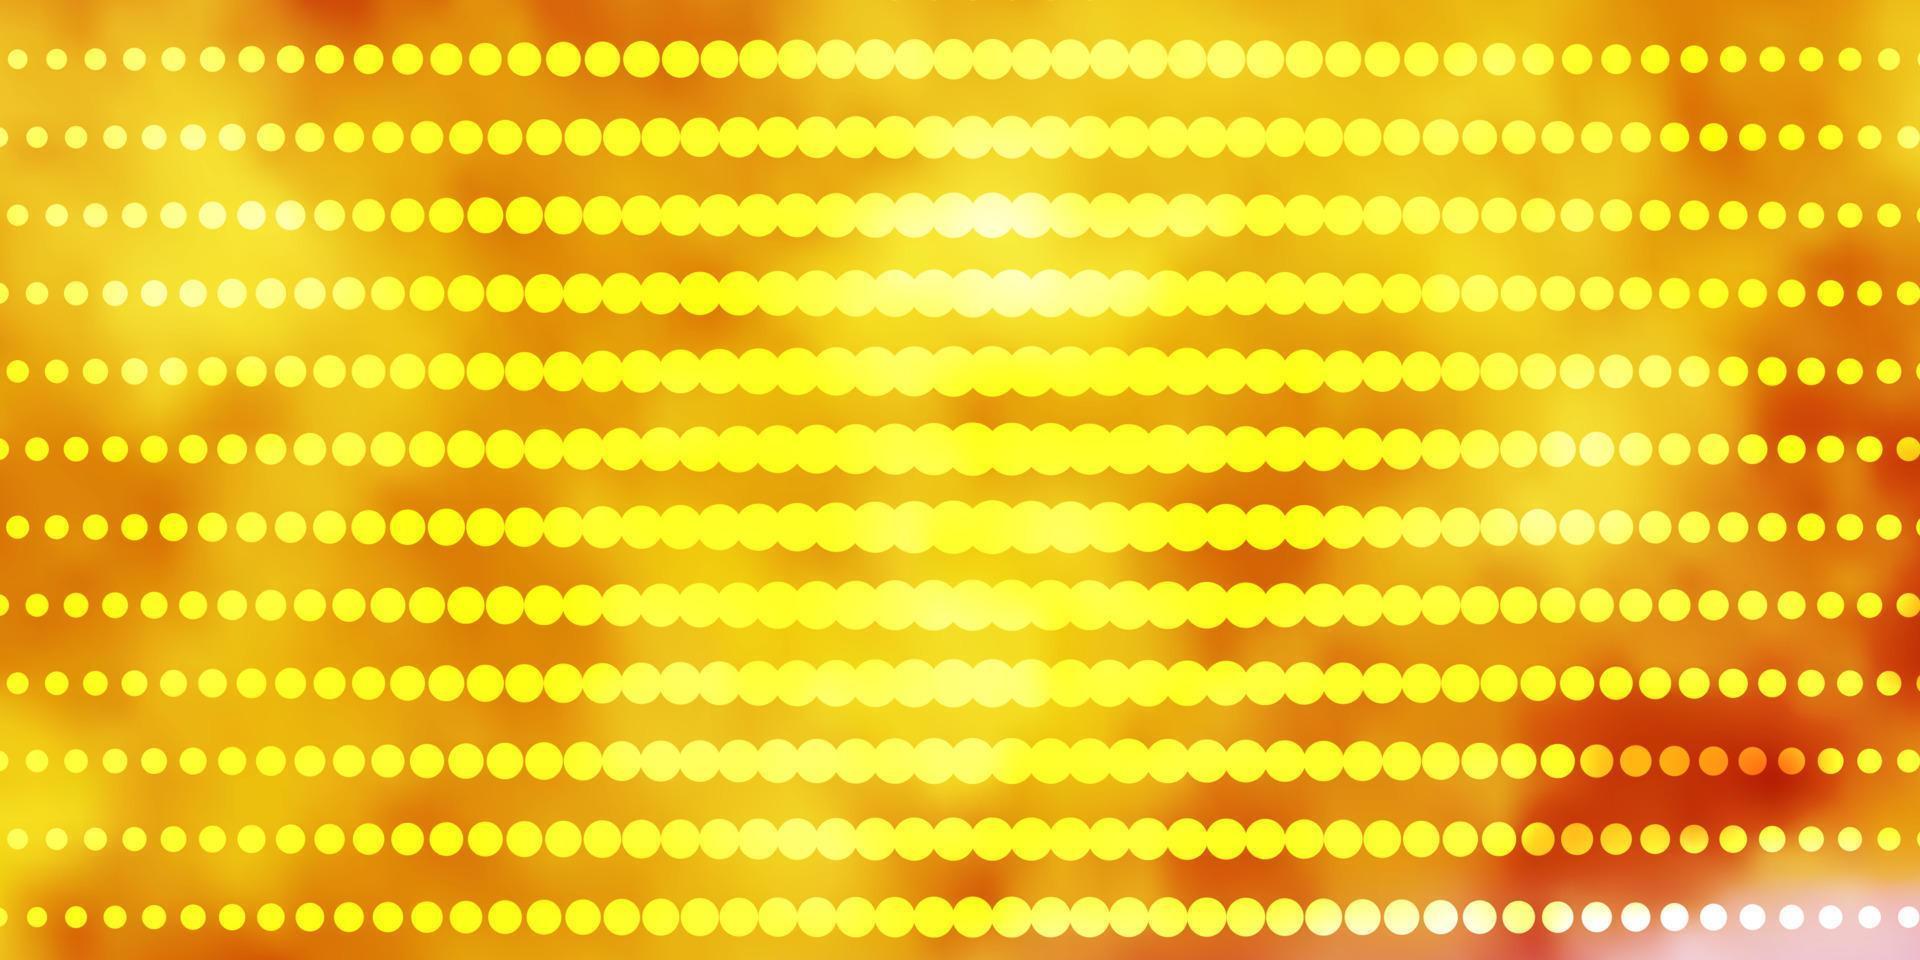 disposition de vecteur rose clair, jaune avec des cercles.